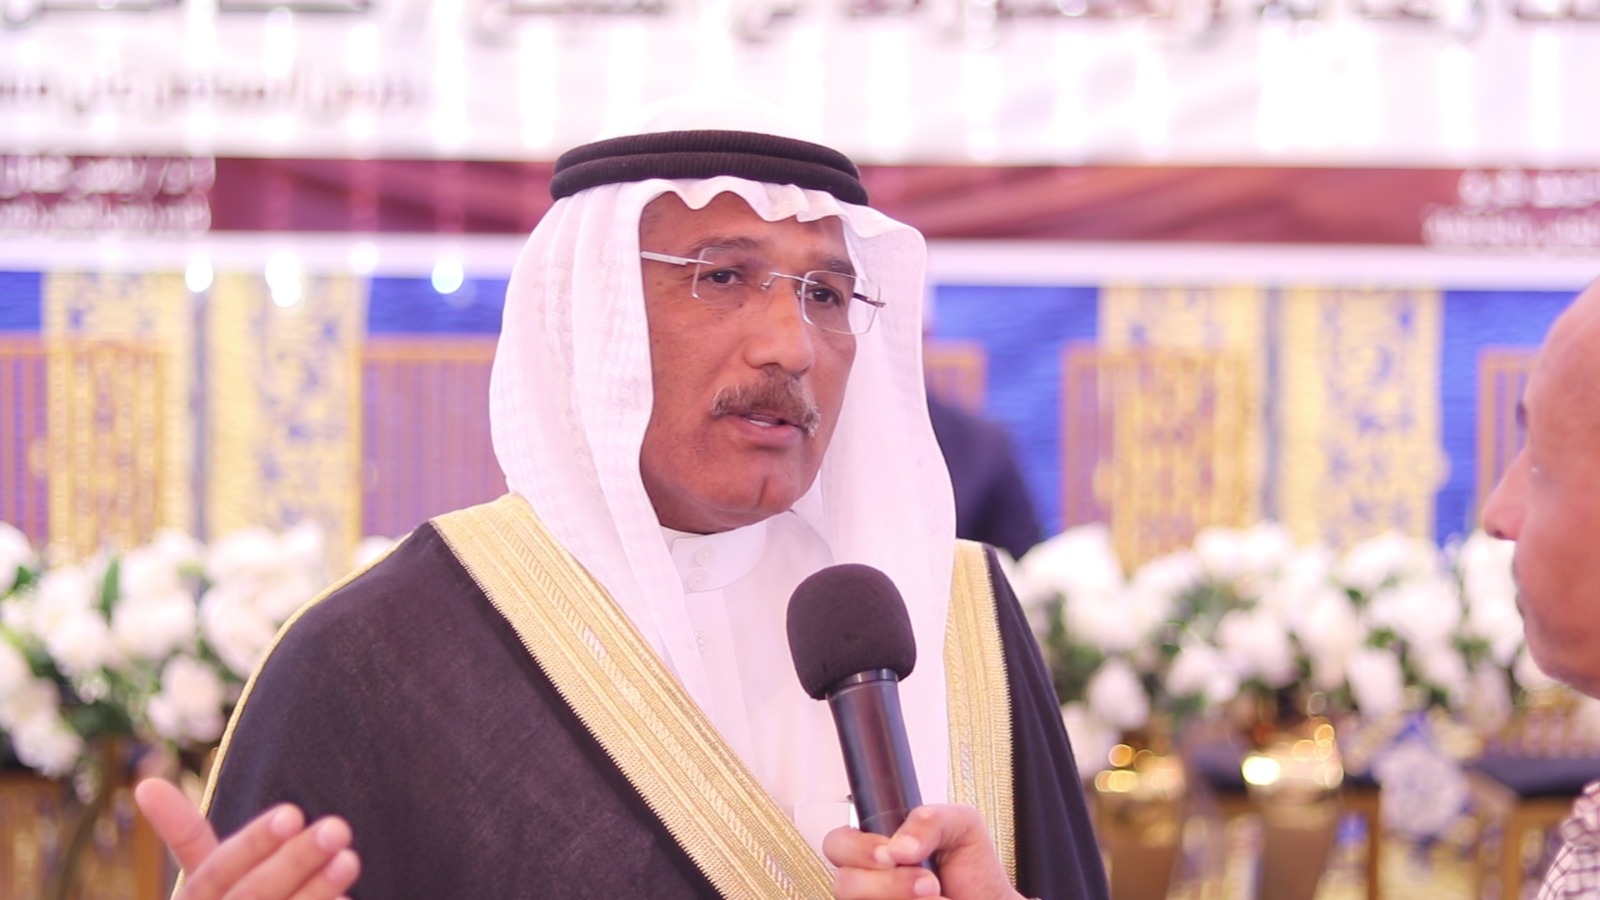 الشيخ كامل مطر رئيس مجلس القبائل والعائلات المصرية خلال لقاء اليوم السابع